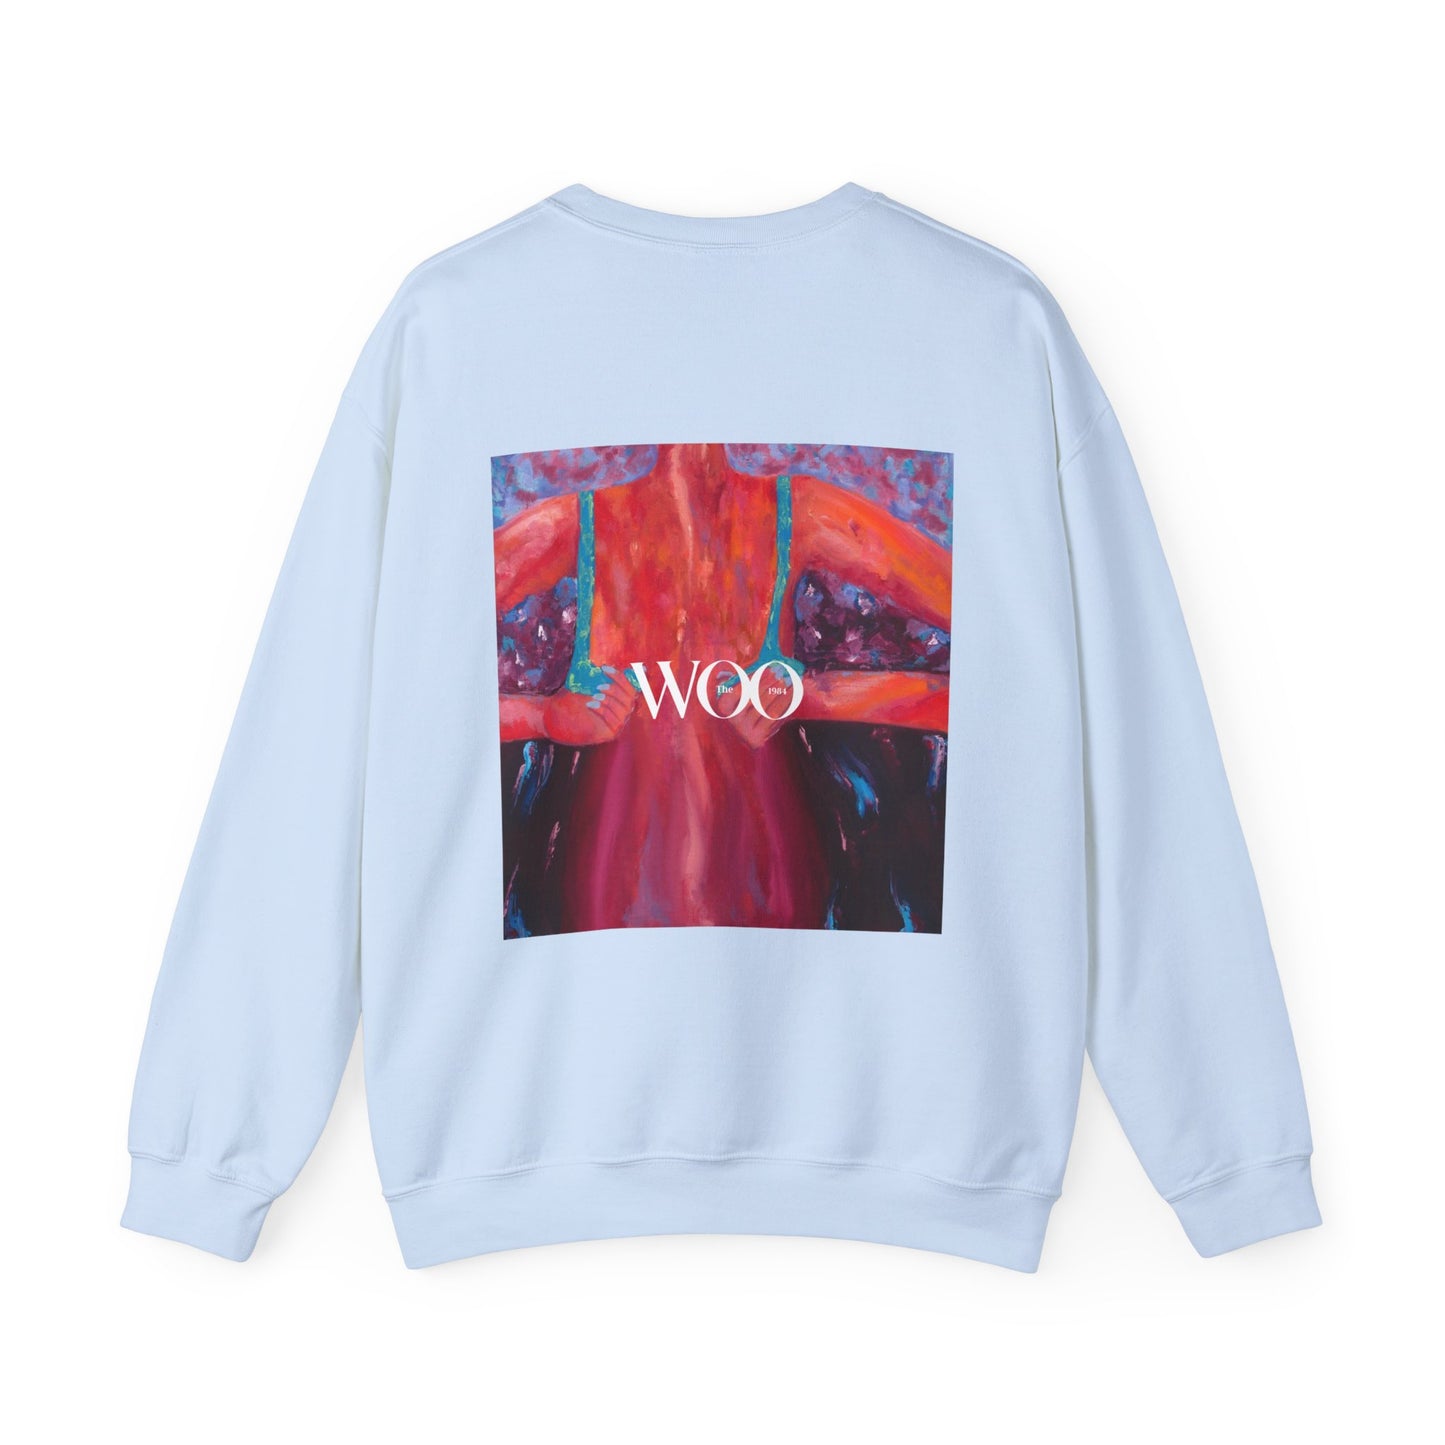 BLISS - Woo sweatshirt